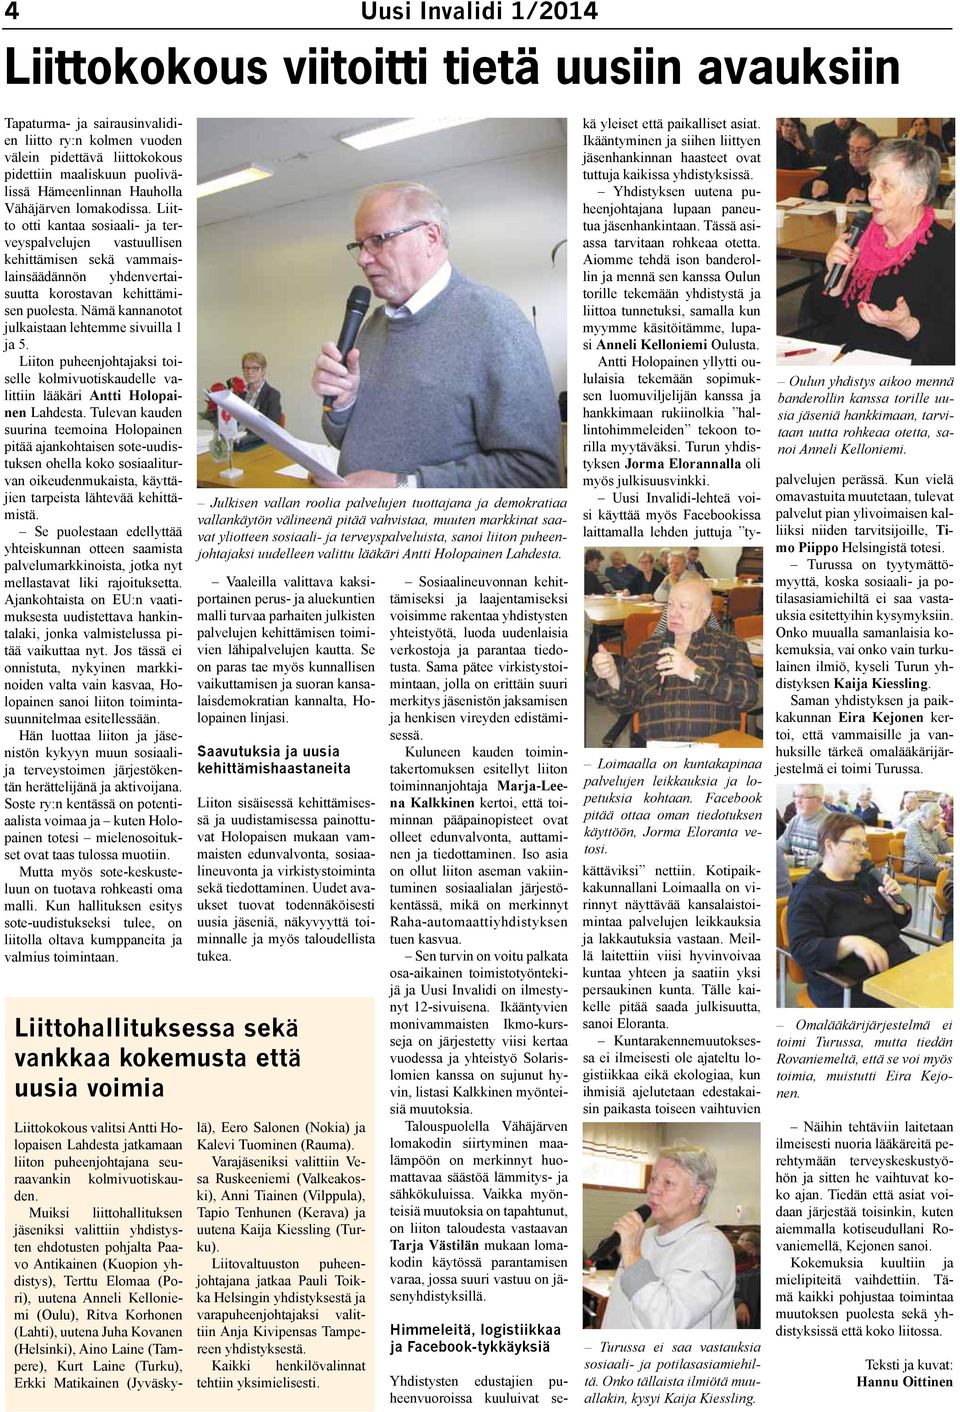 Nämä kannanotot julkaistaan lehtemme sivuilla 1 ja 5. Liiton puheenjohtajaksi toiselle kolmivuotiskaudelle valittiin lääkäri Antti Holopainen Lahdesta.